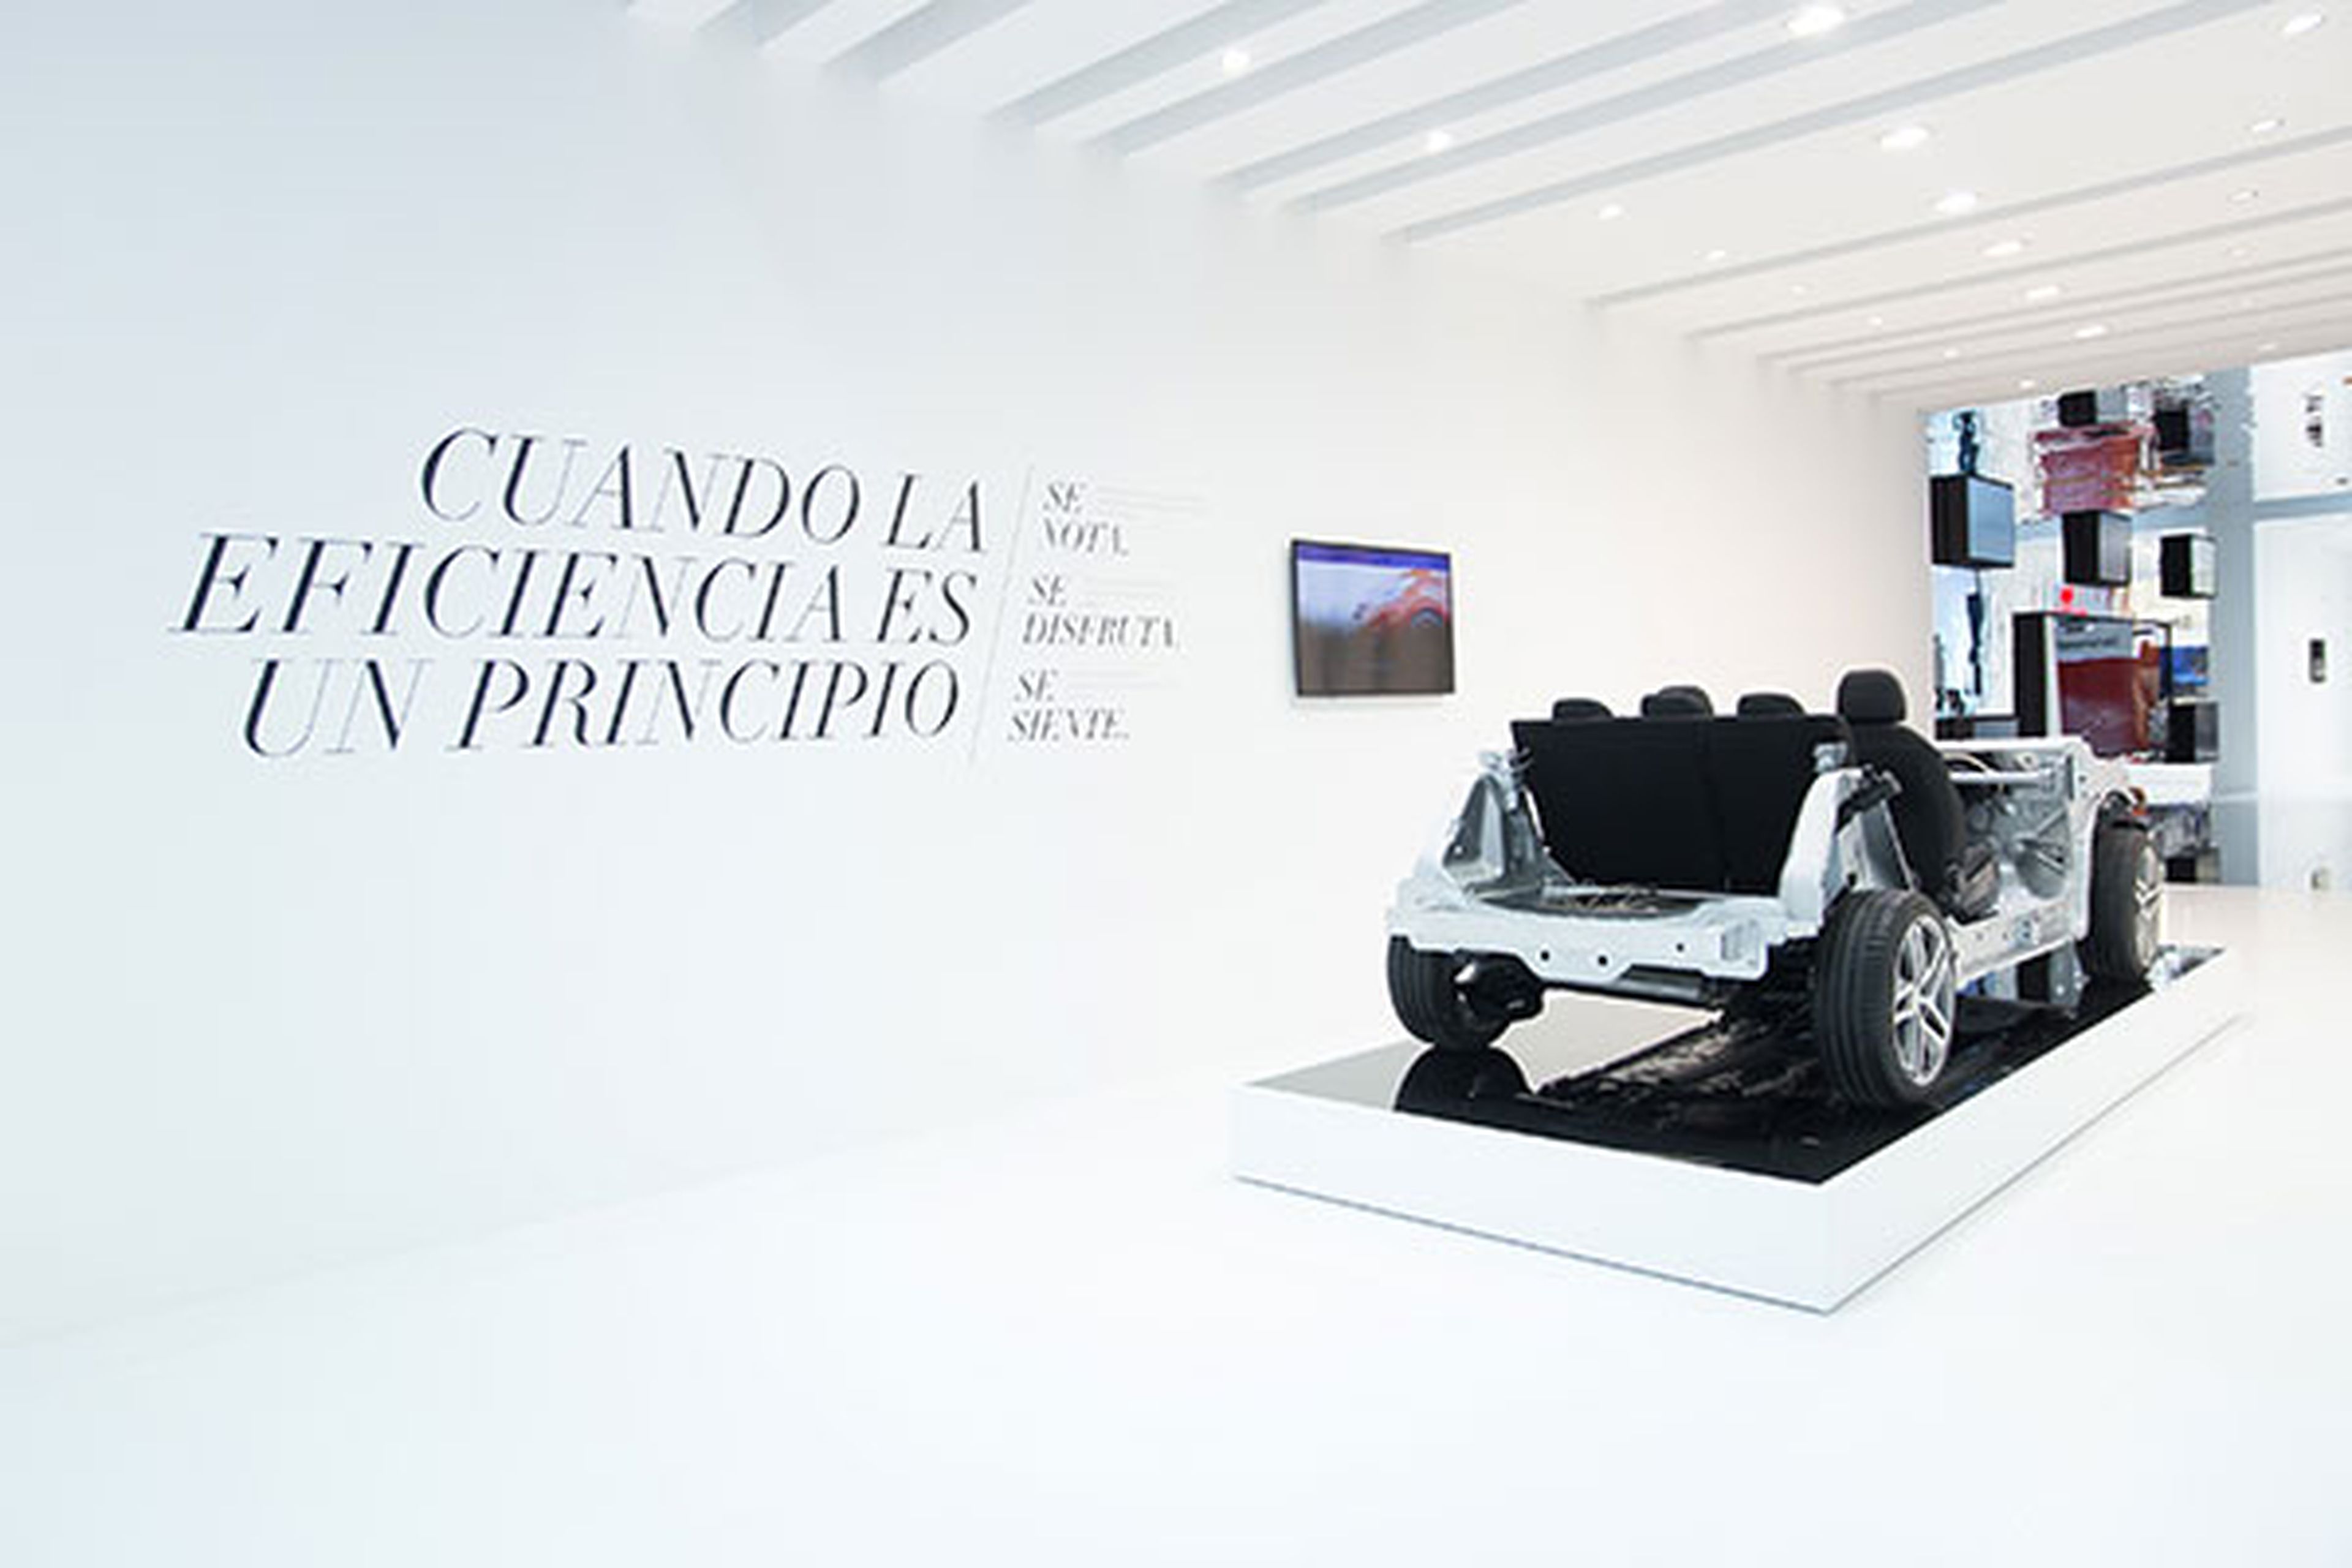 El stand de Peugeot, Citroën y DS apuesta por las tecnologías y la conectividad